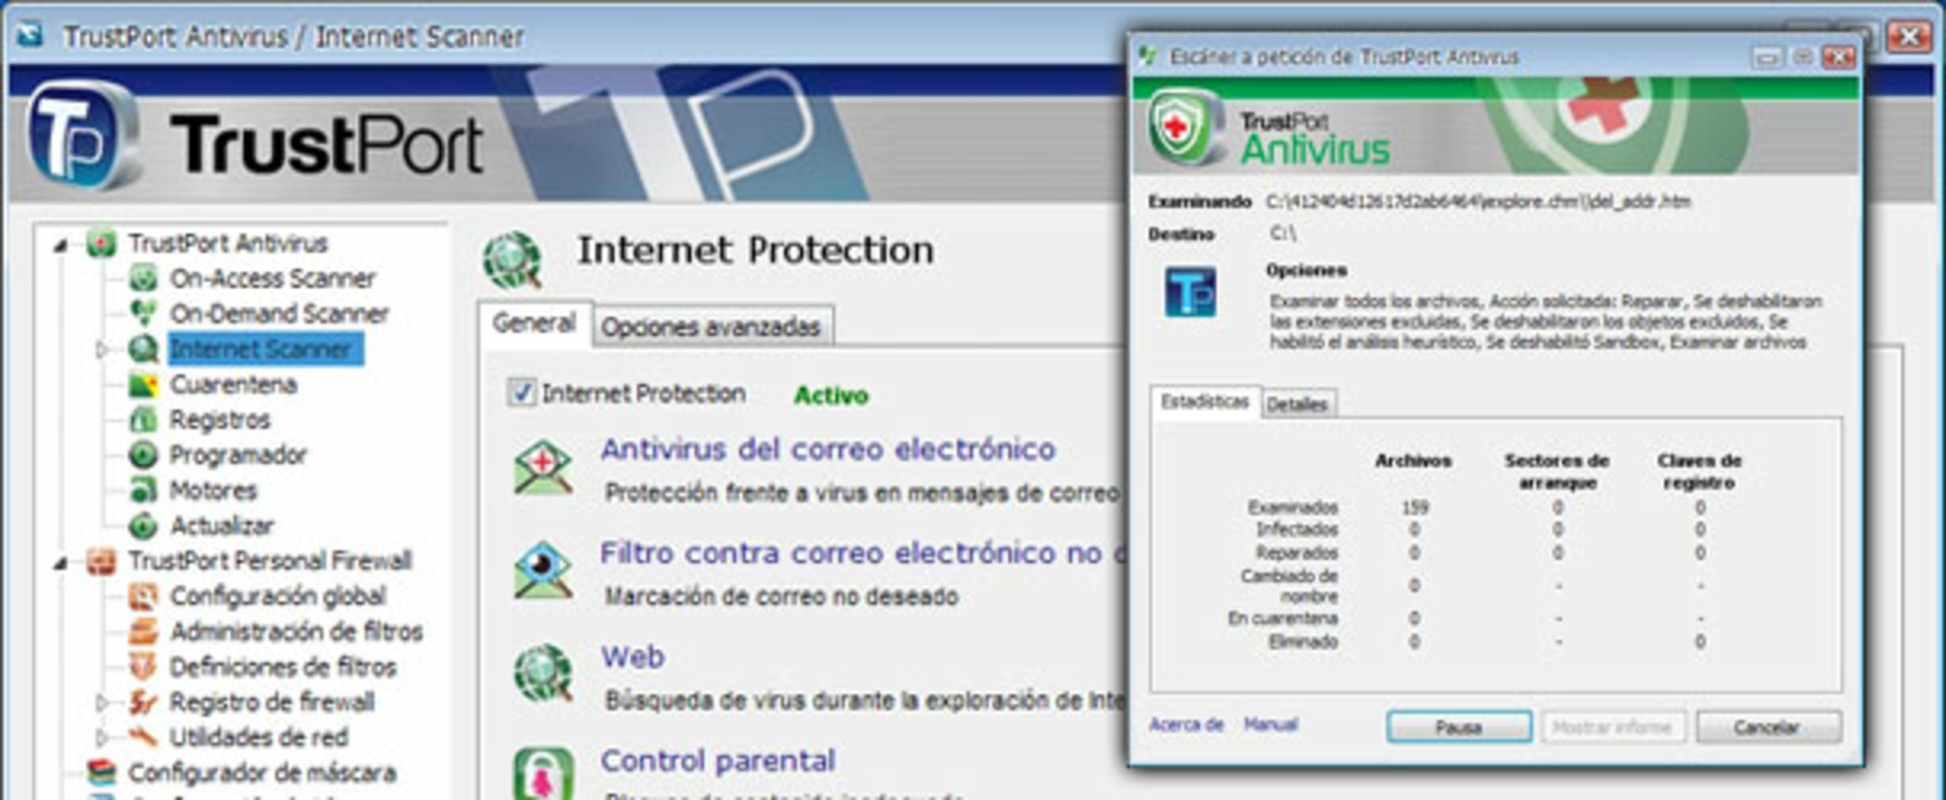 TrustPort PC Security 2010 feature